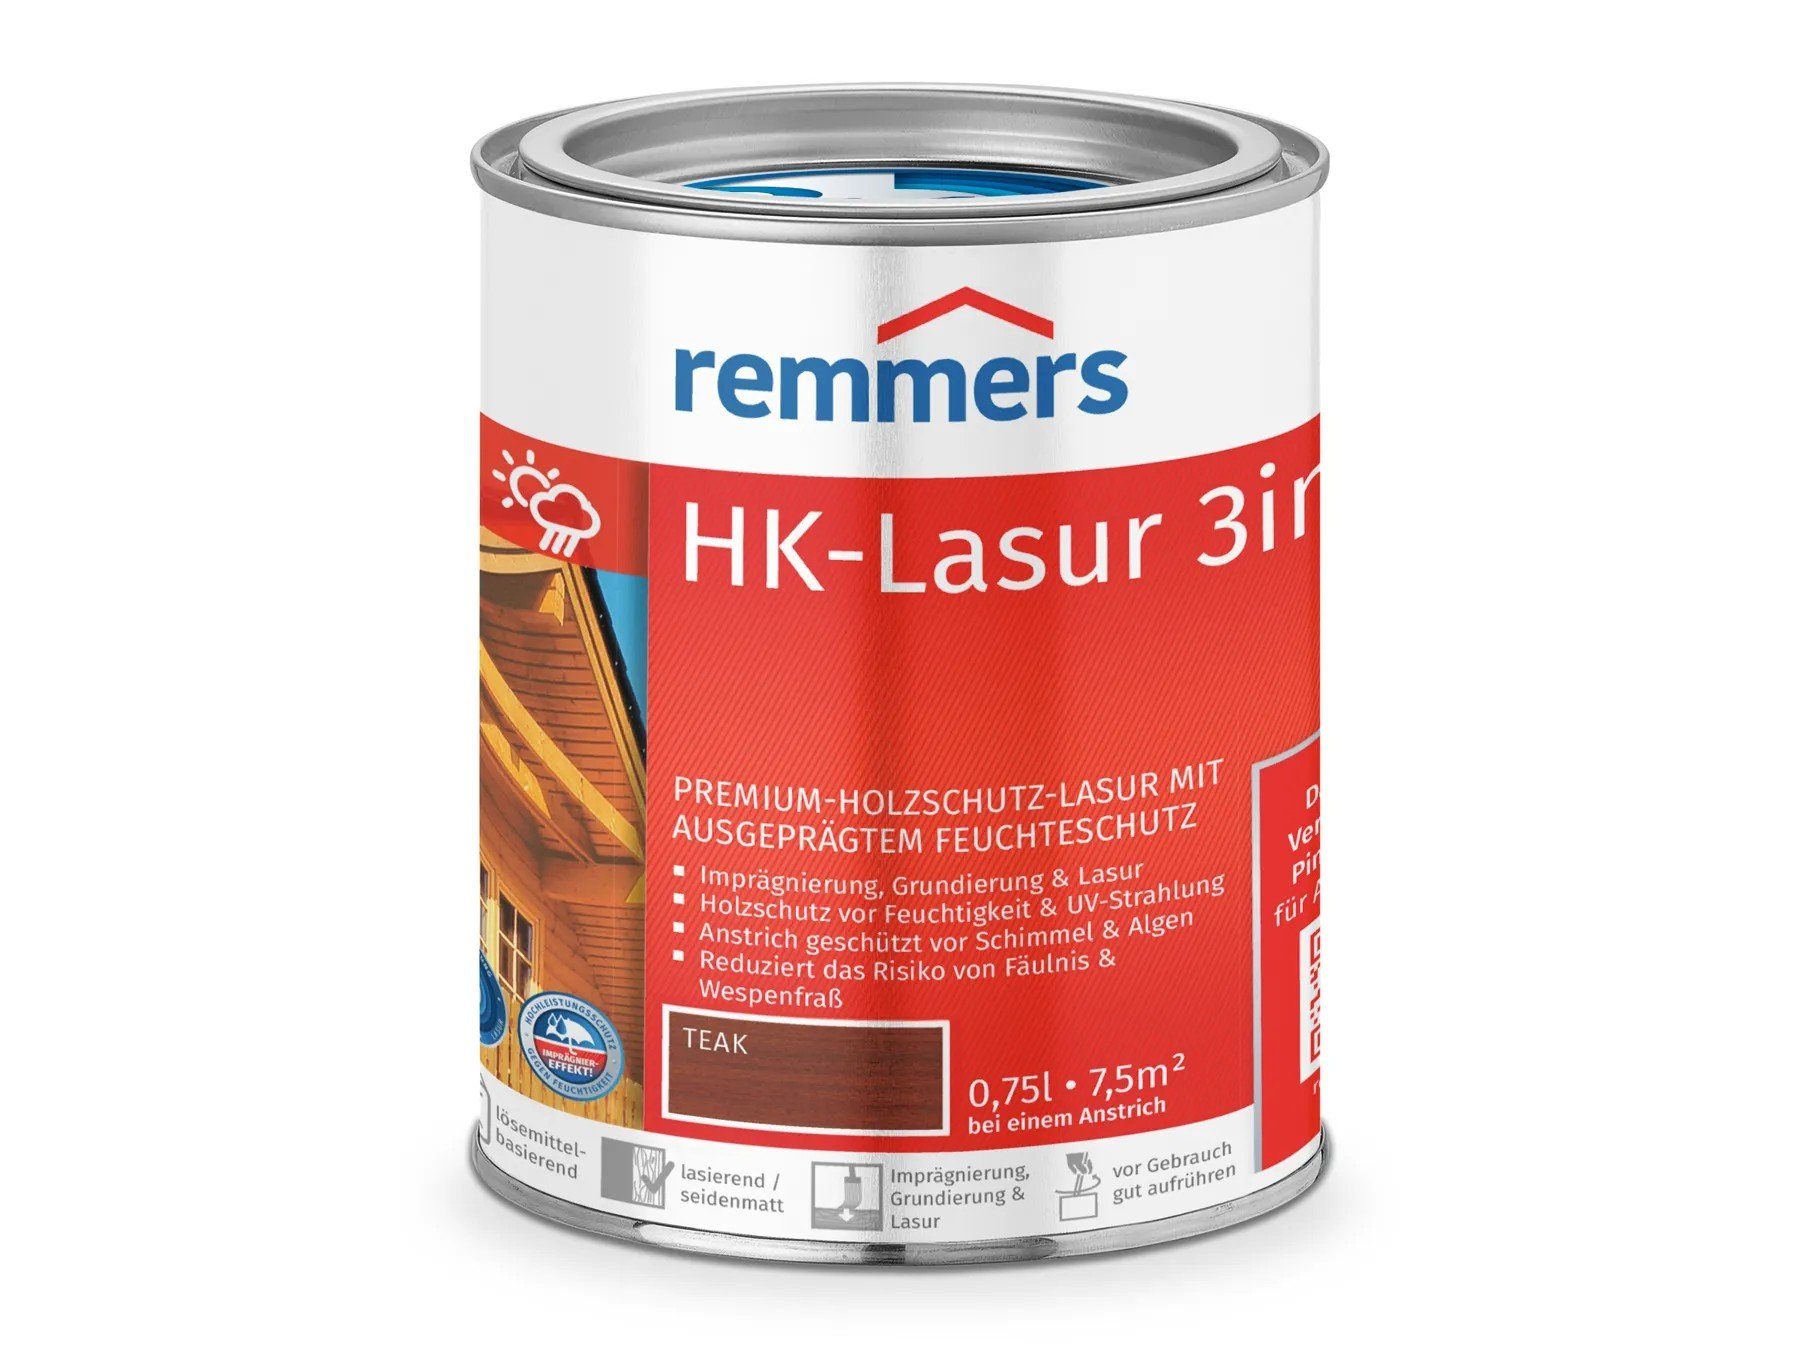 (RC-545) HK-Lasur teak Remmers 3in1 Holzschutzlasur